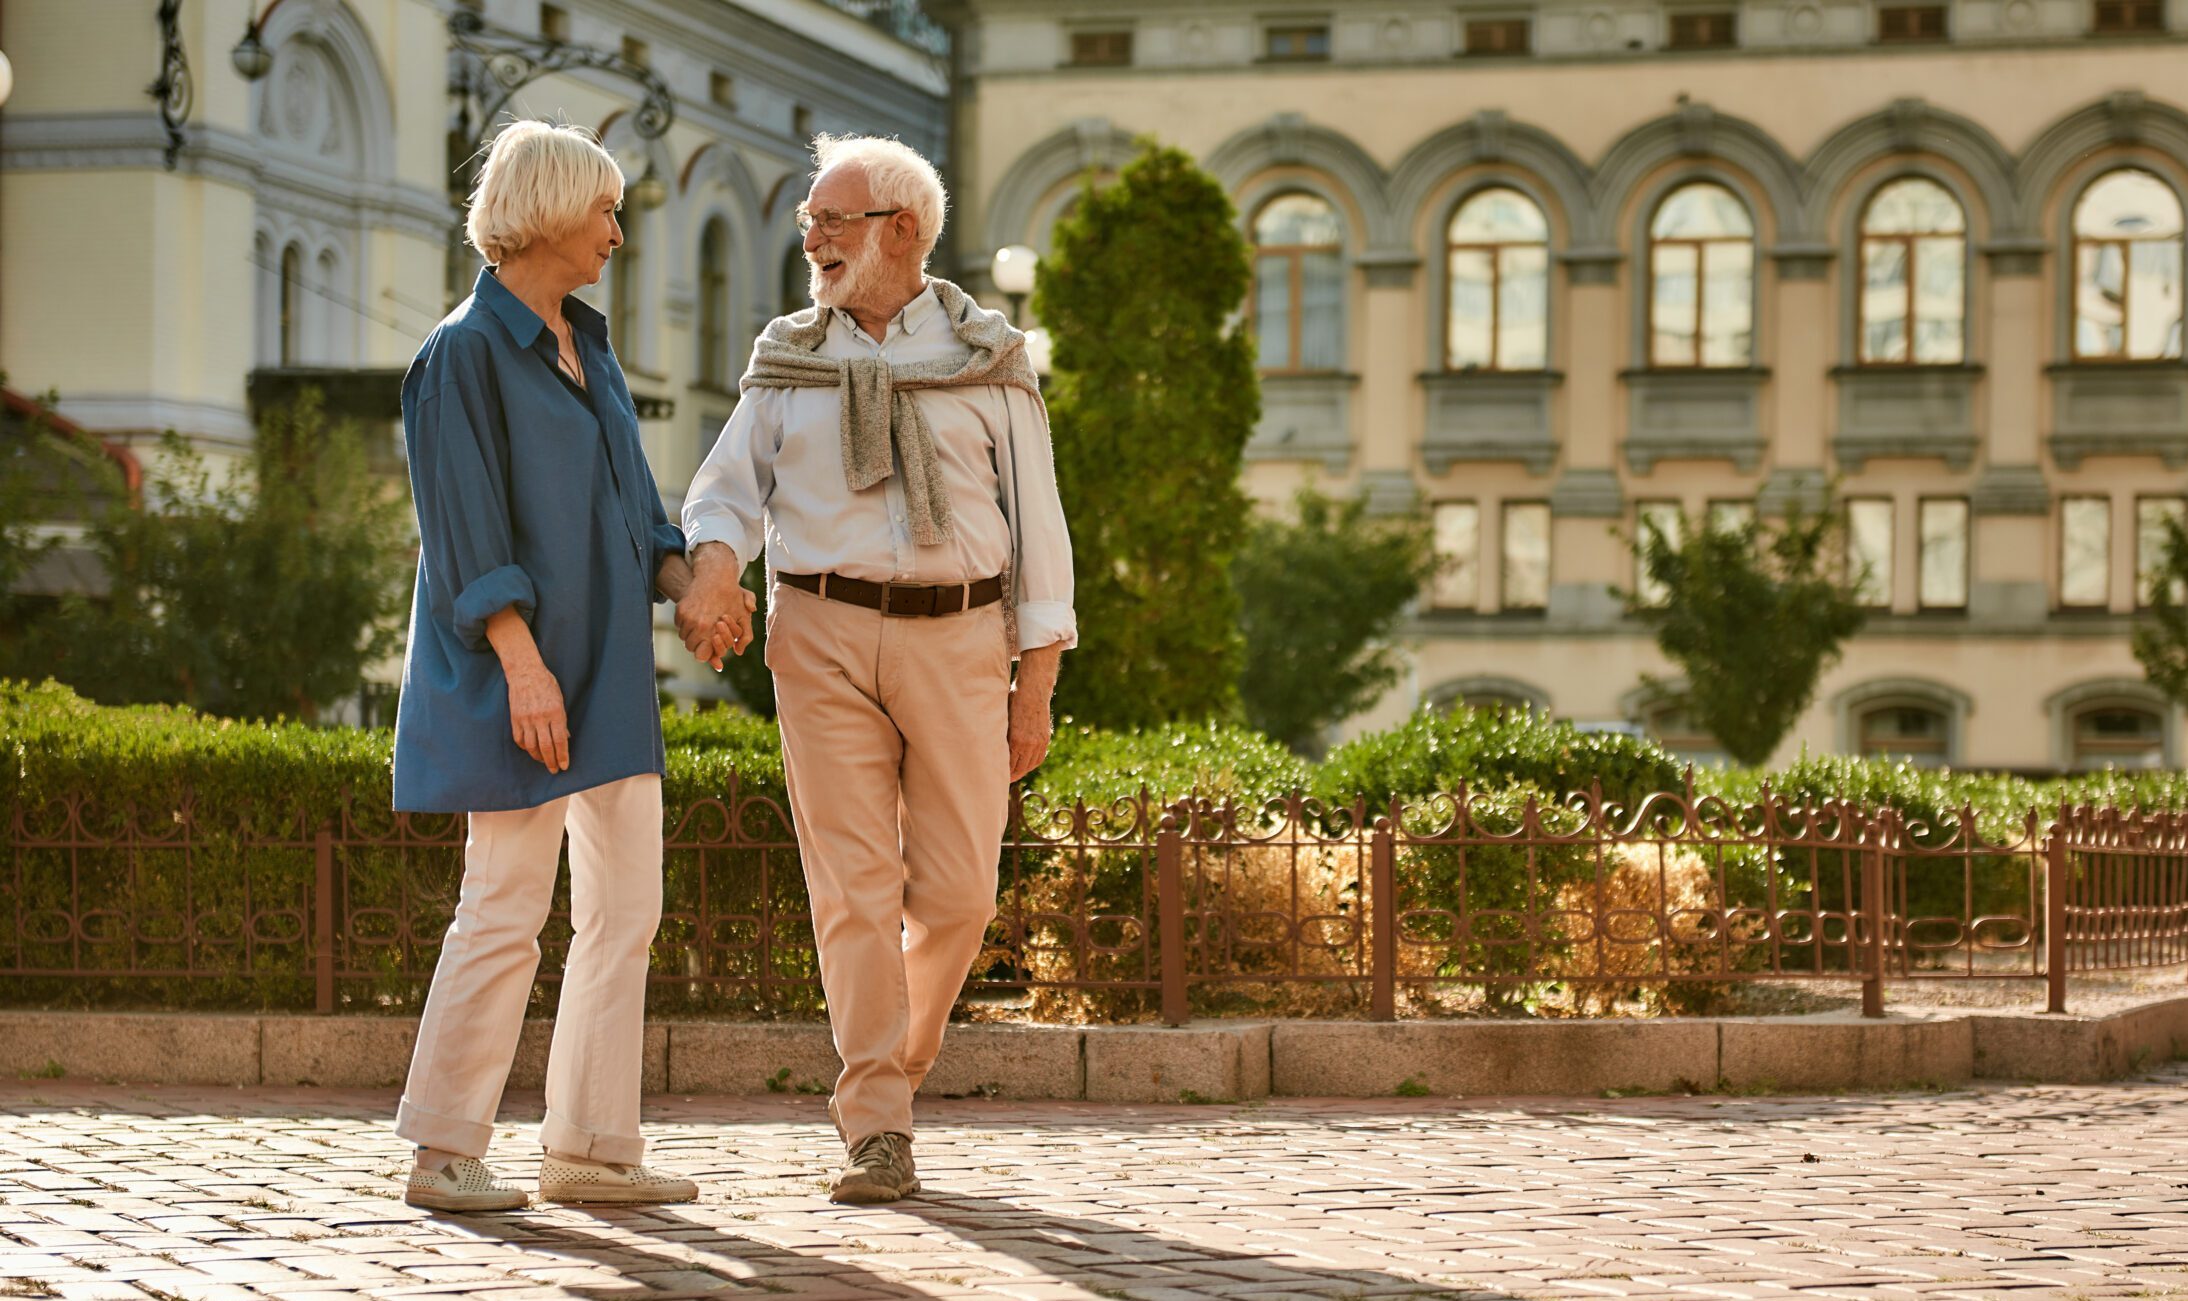 happy elderly couple walking